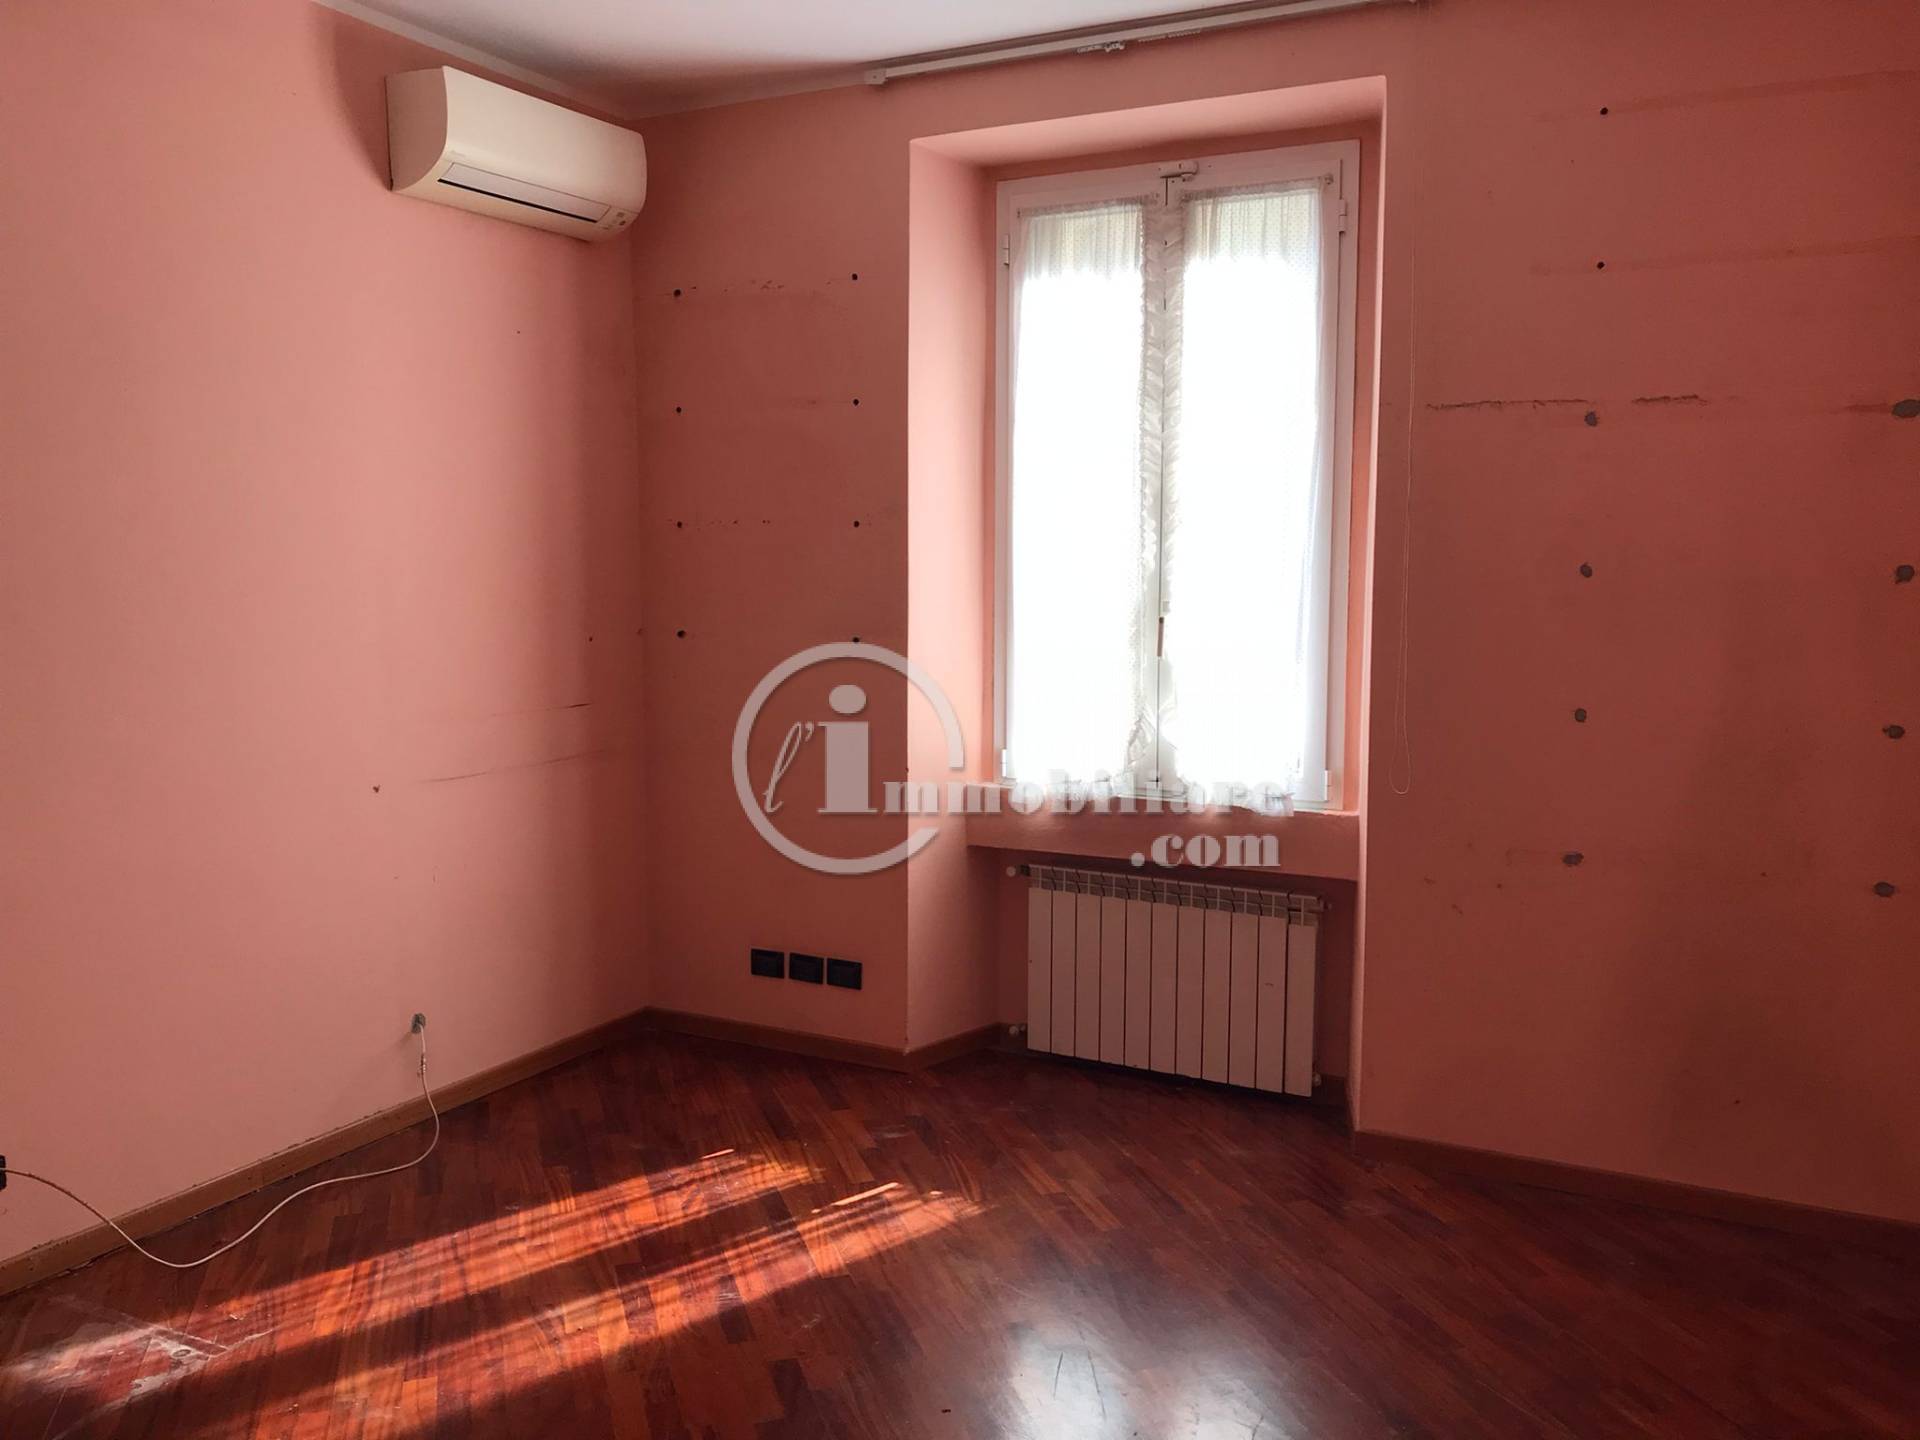 Appartamento in Vendita a Milano: 4 locali, 104 mq - Foto 23